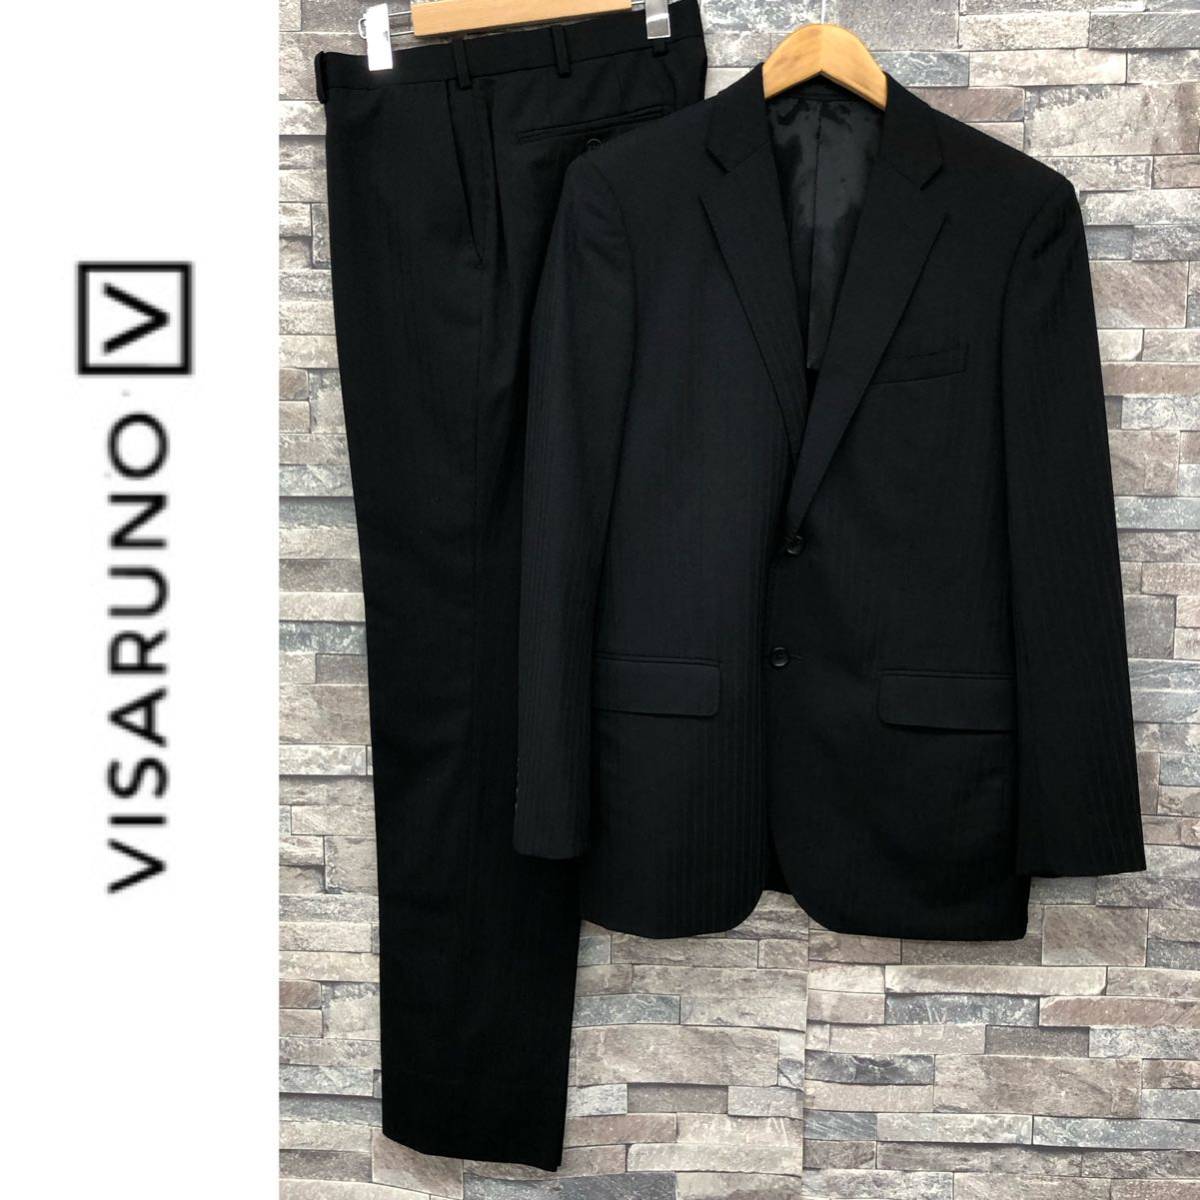 VISARUNO ビサルノ メンズ セットアップスーツ シャドーストライプ ブラック ジャケット2B 背抜き パンツノータック サイズ180Y ウエスト85の画像1